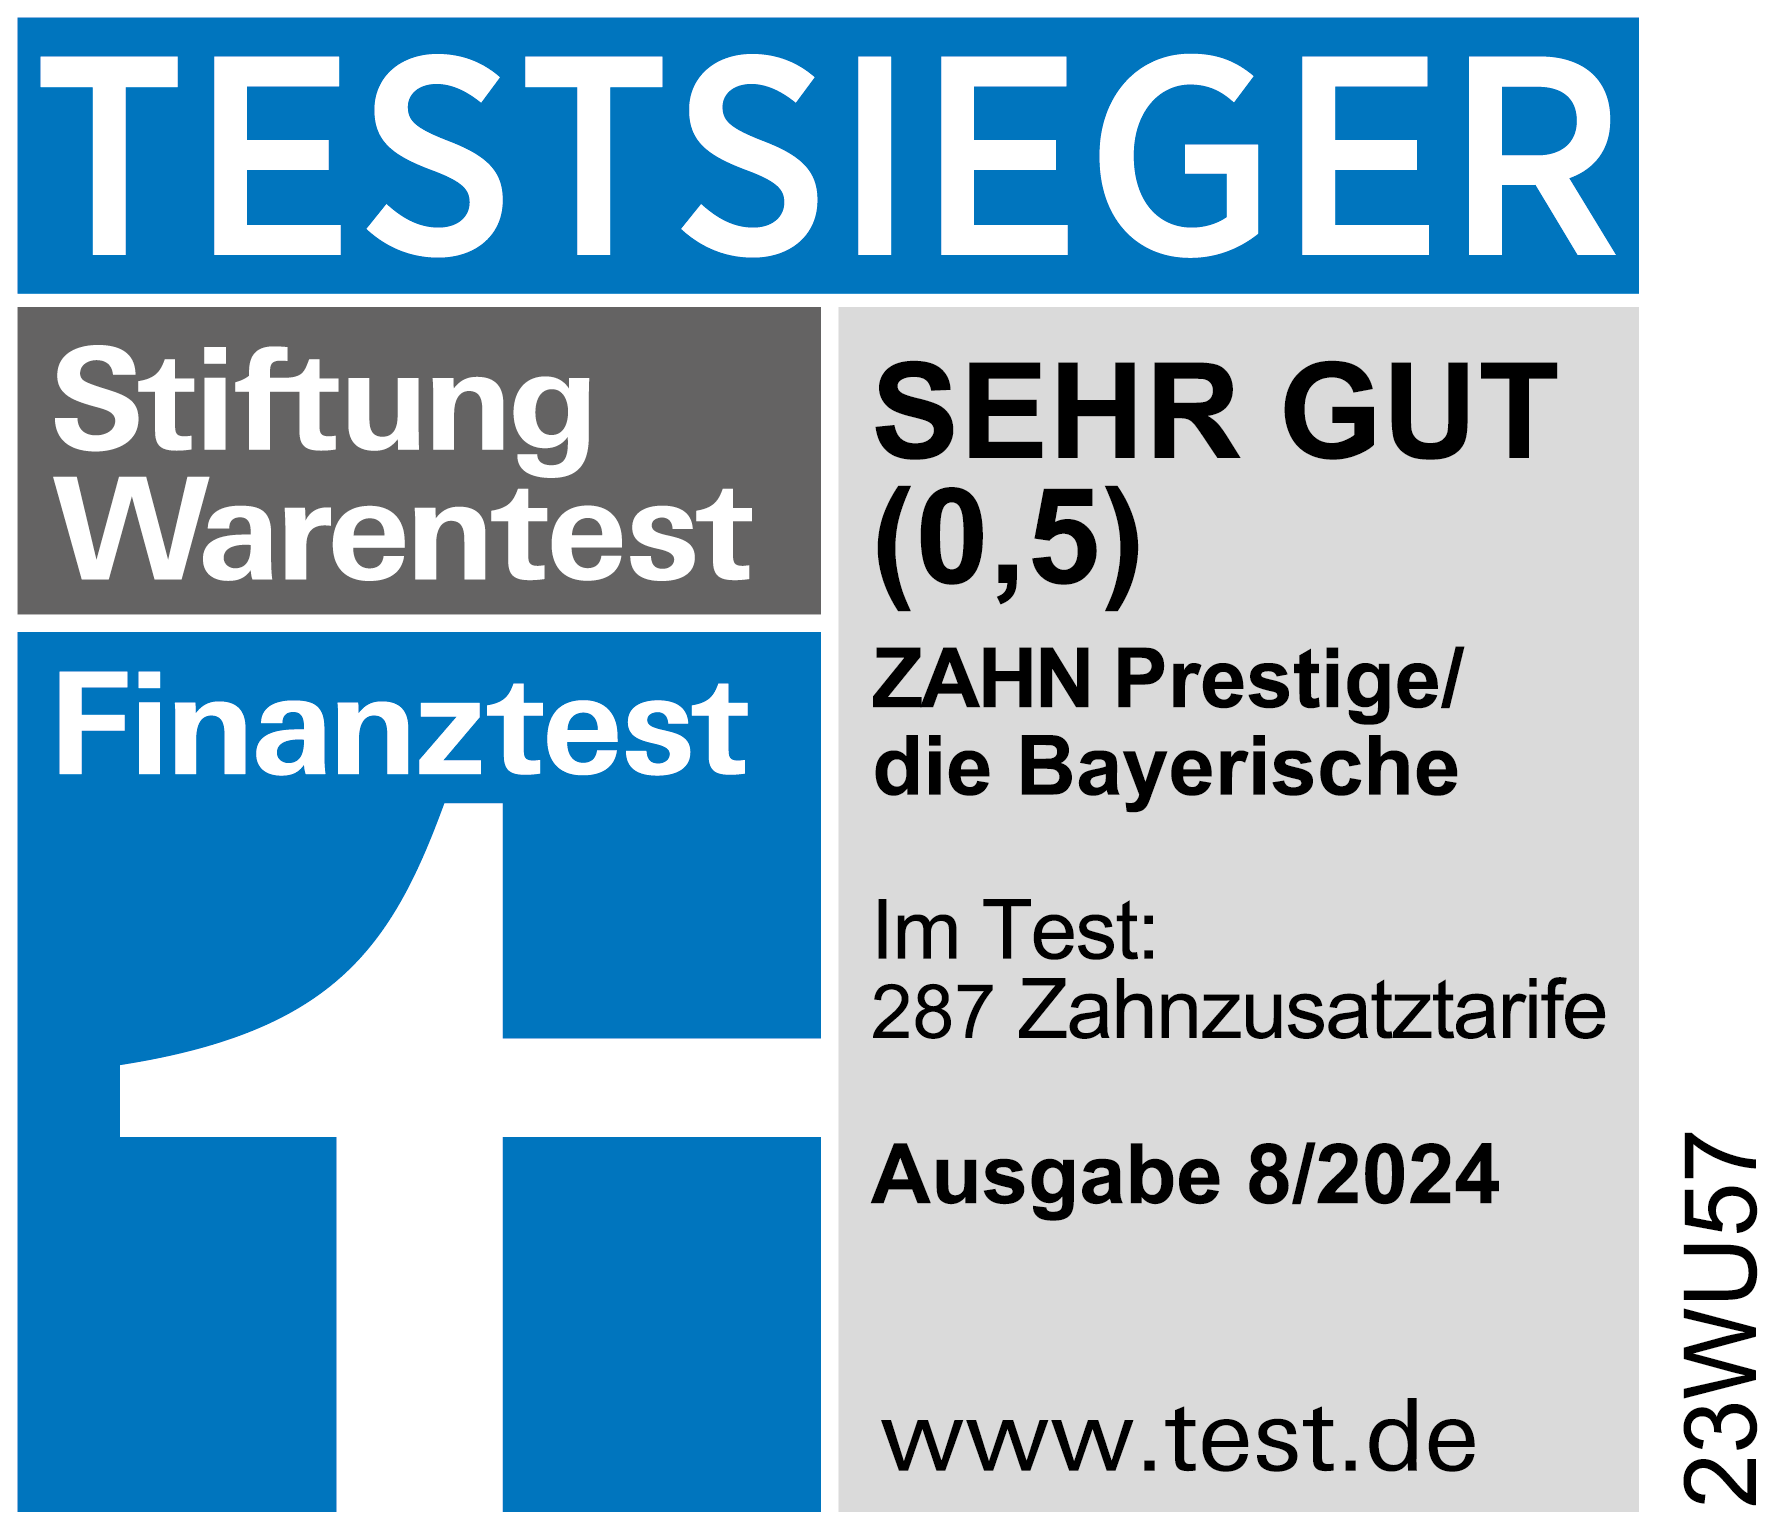 Zahn Prestige der Bayerischen: Testsieger bei Stiftung Warentest Ausgabe 8/2024